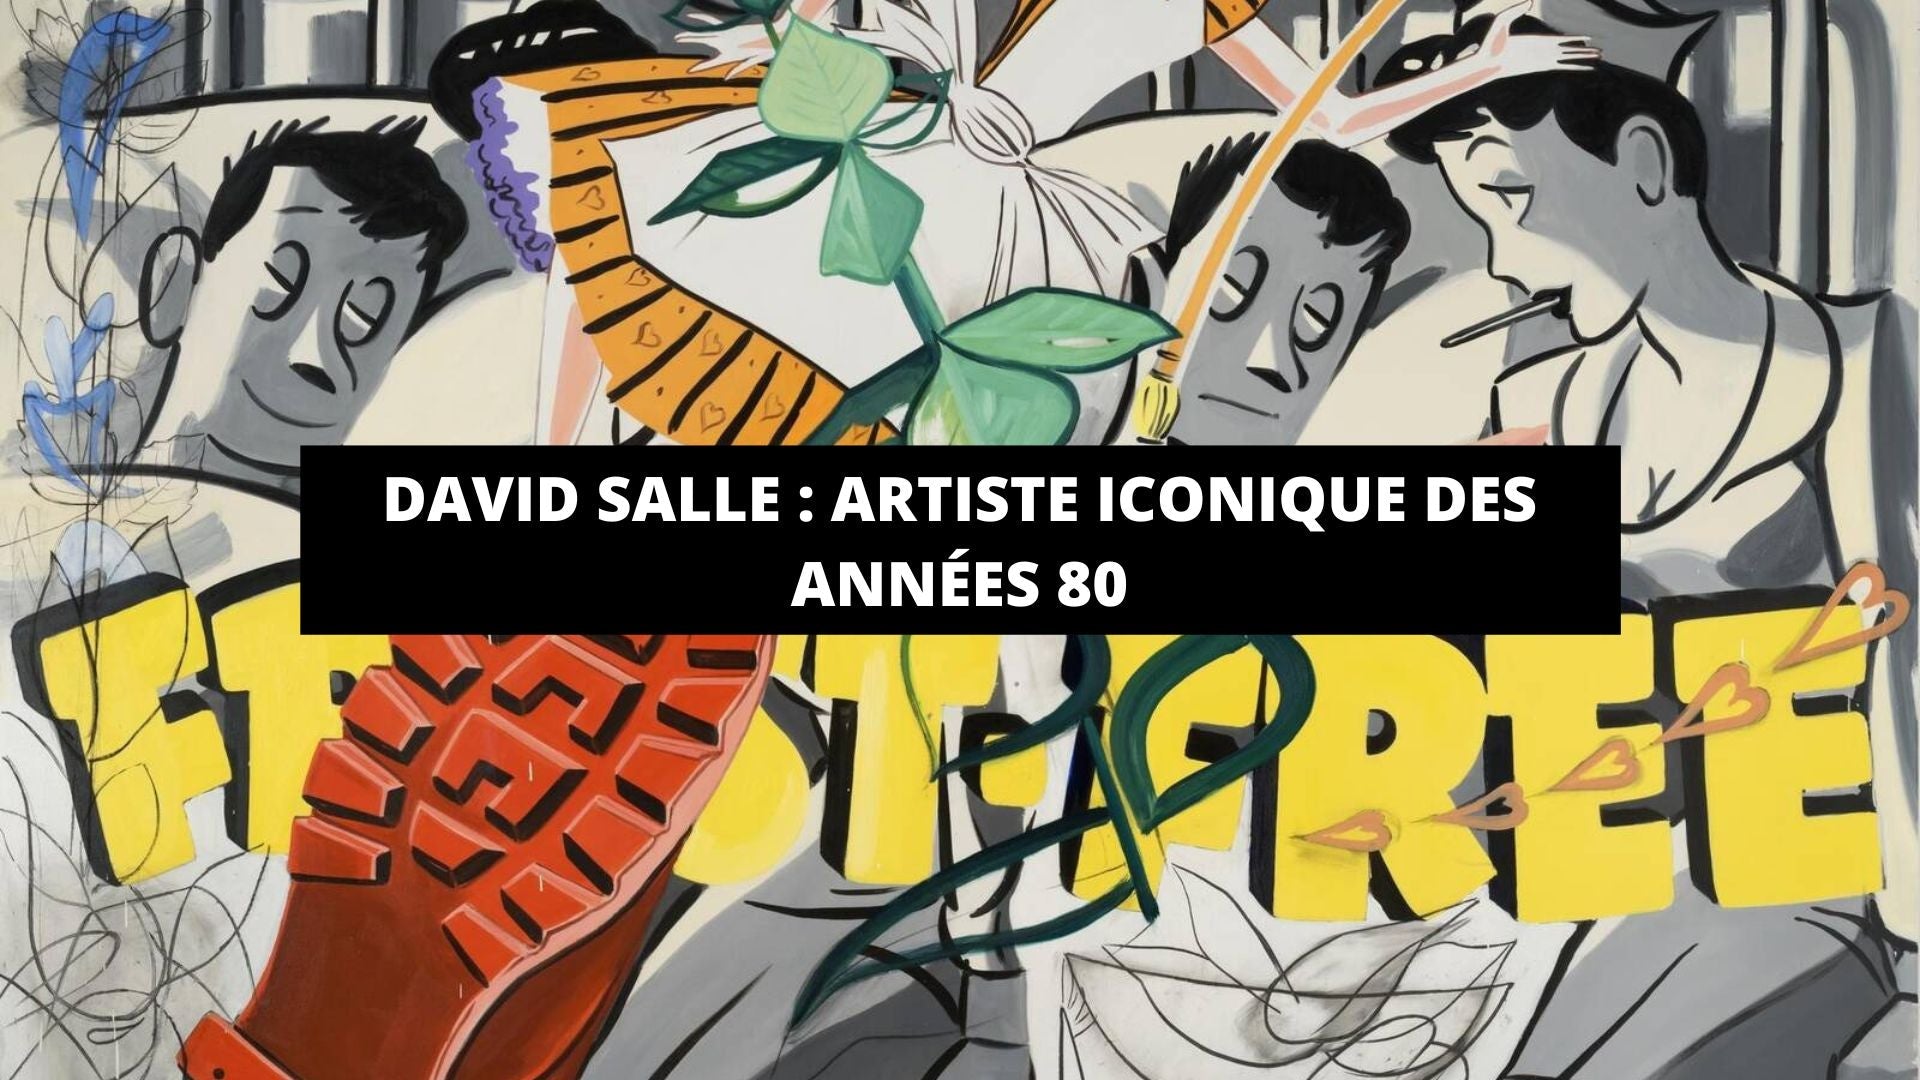 David Salle : artiste iconique des années 80 - The Art Avenue